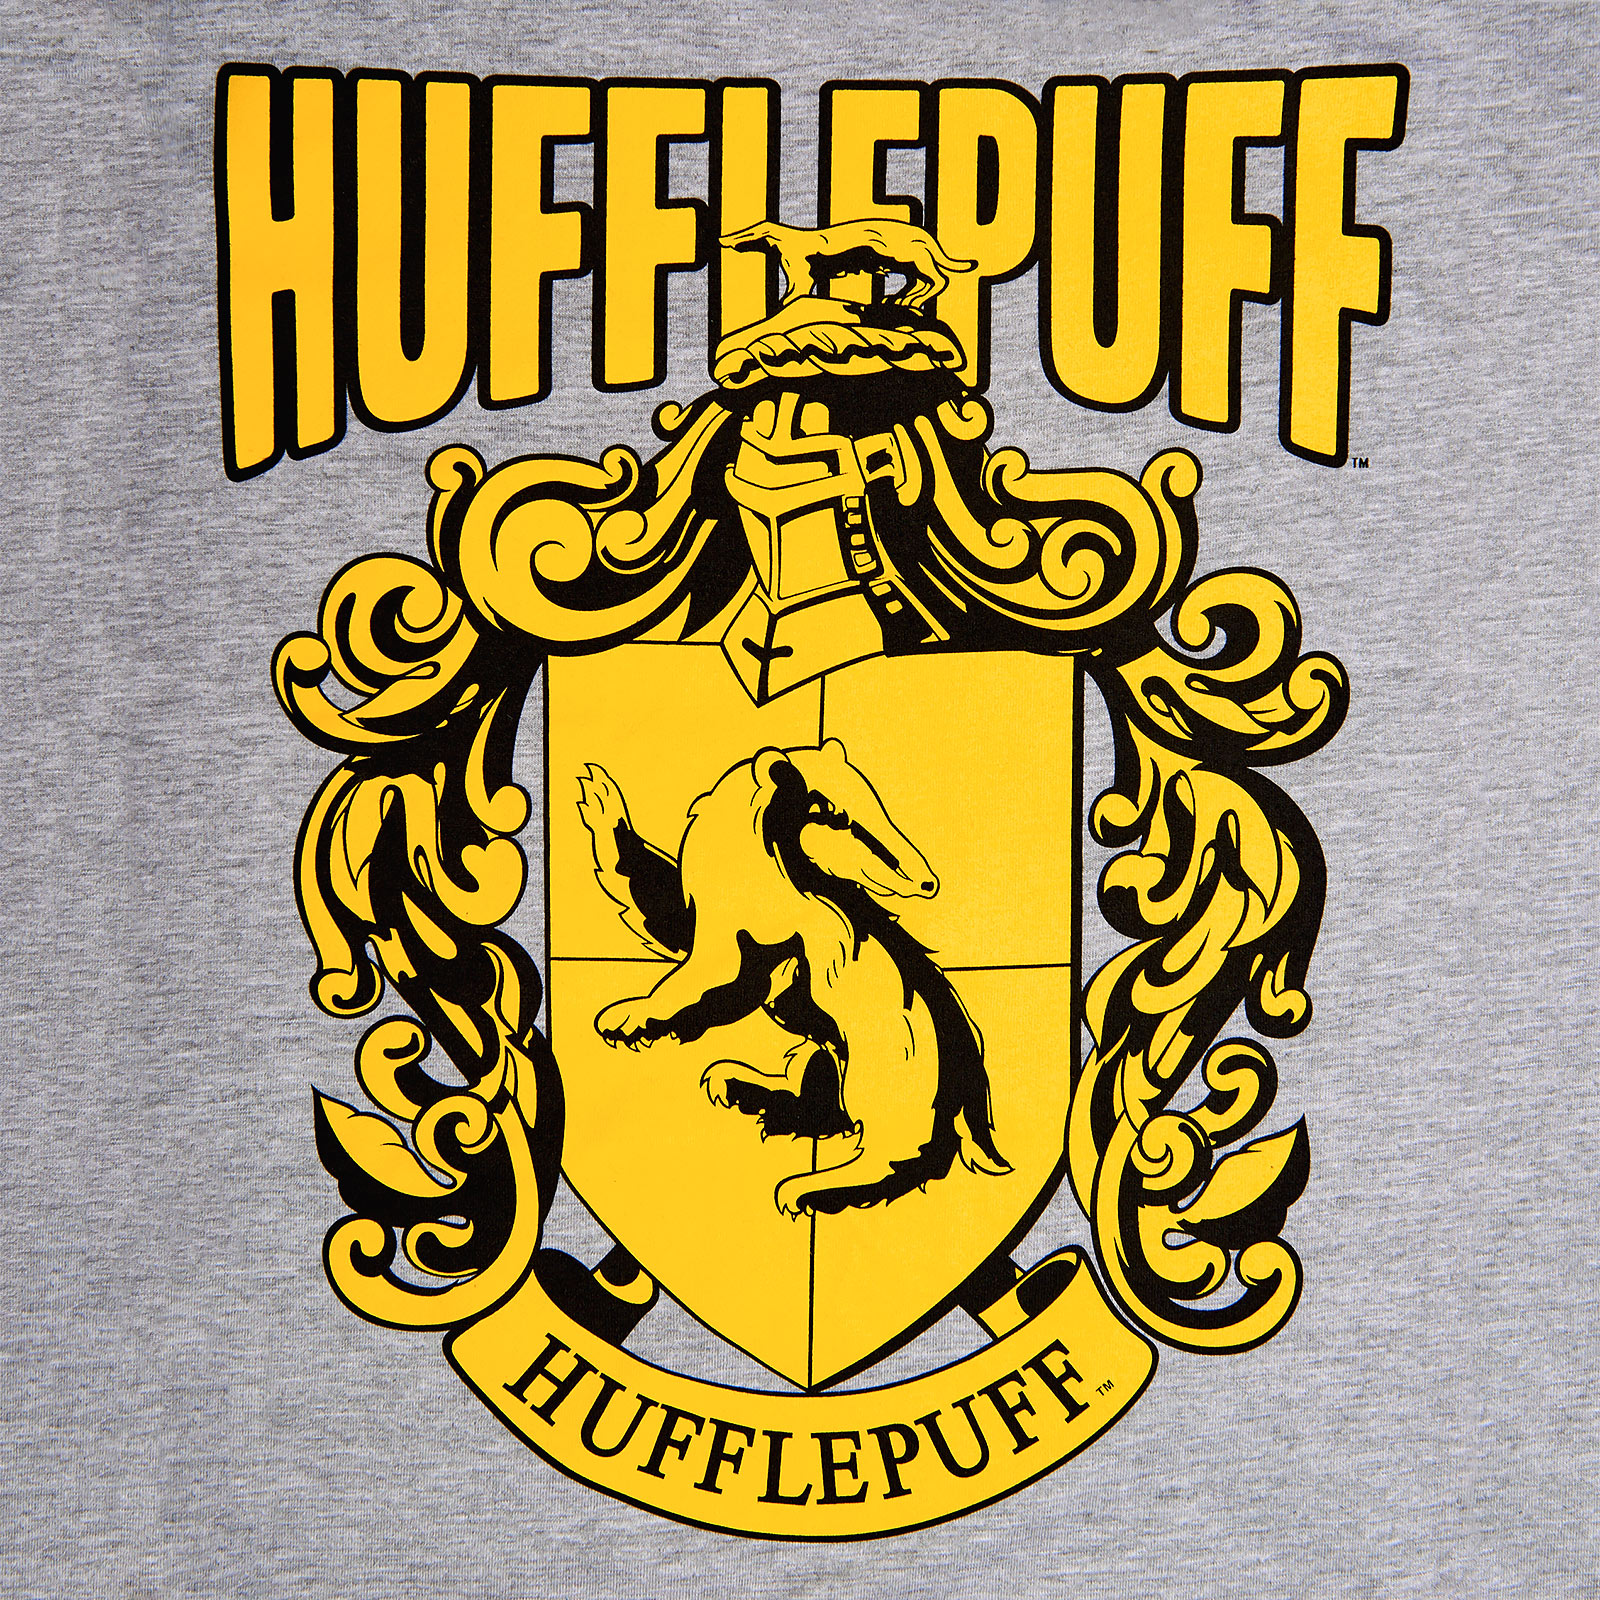 Harry Potter - Hufflepuff Wappen T-Shirt grau